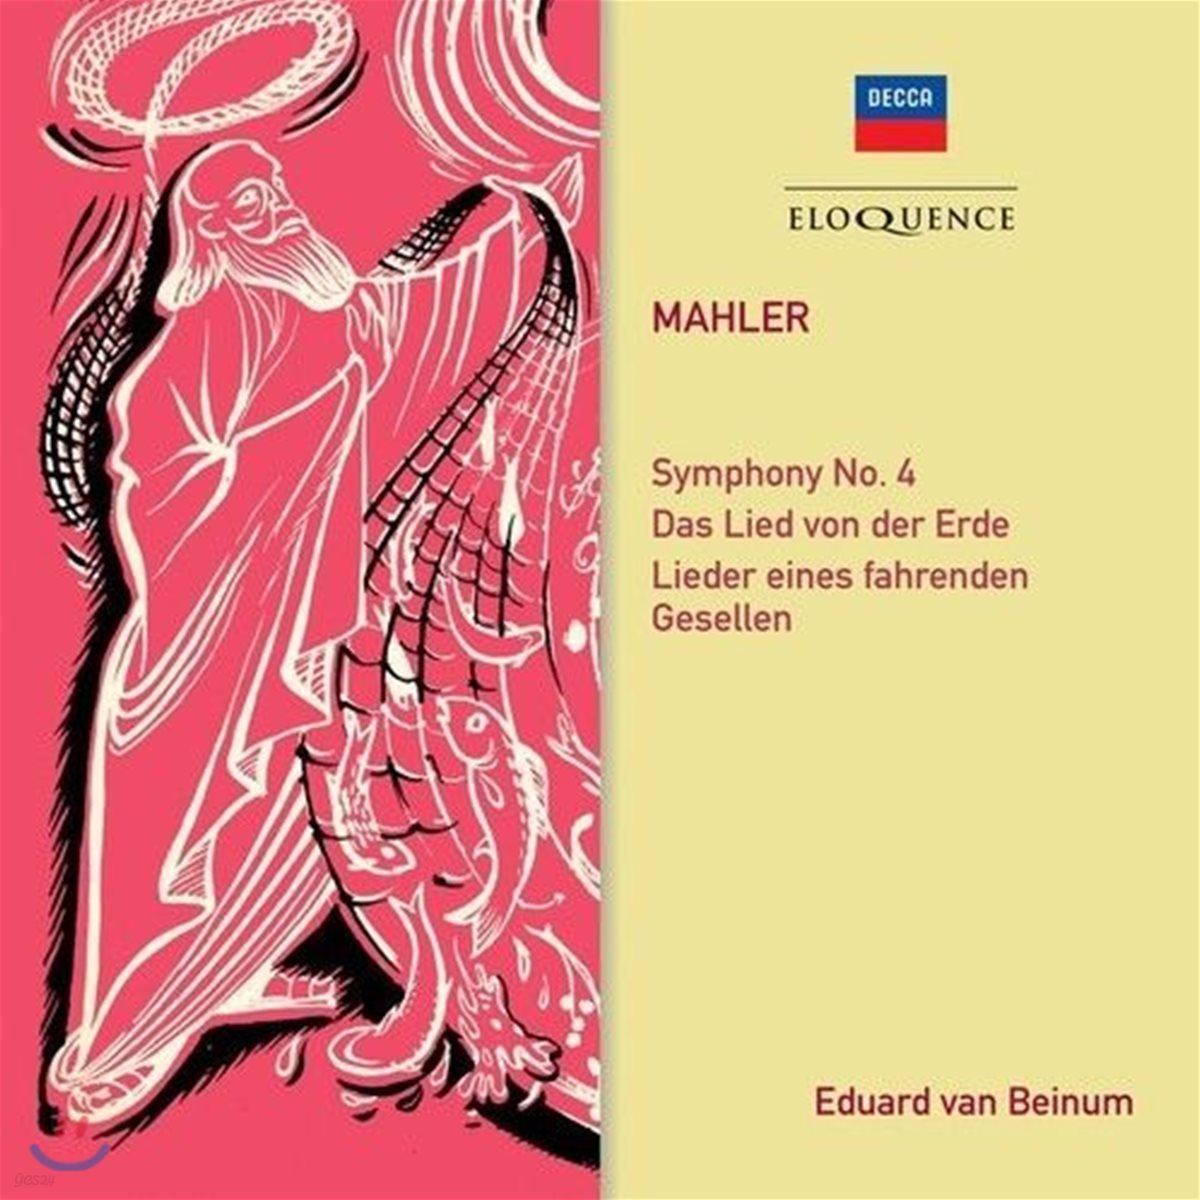 Eduard van Beinum 말러: 교향곡 4번, 대지의 노래 외 (Mahler: Symphony No. 4 & Das Lied von der Erde)